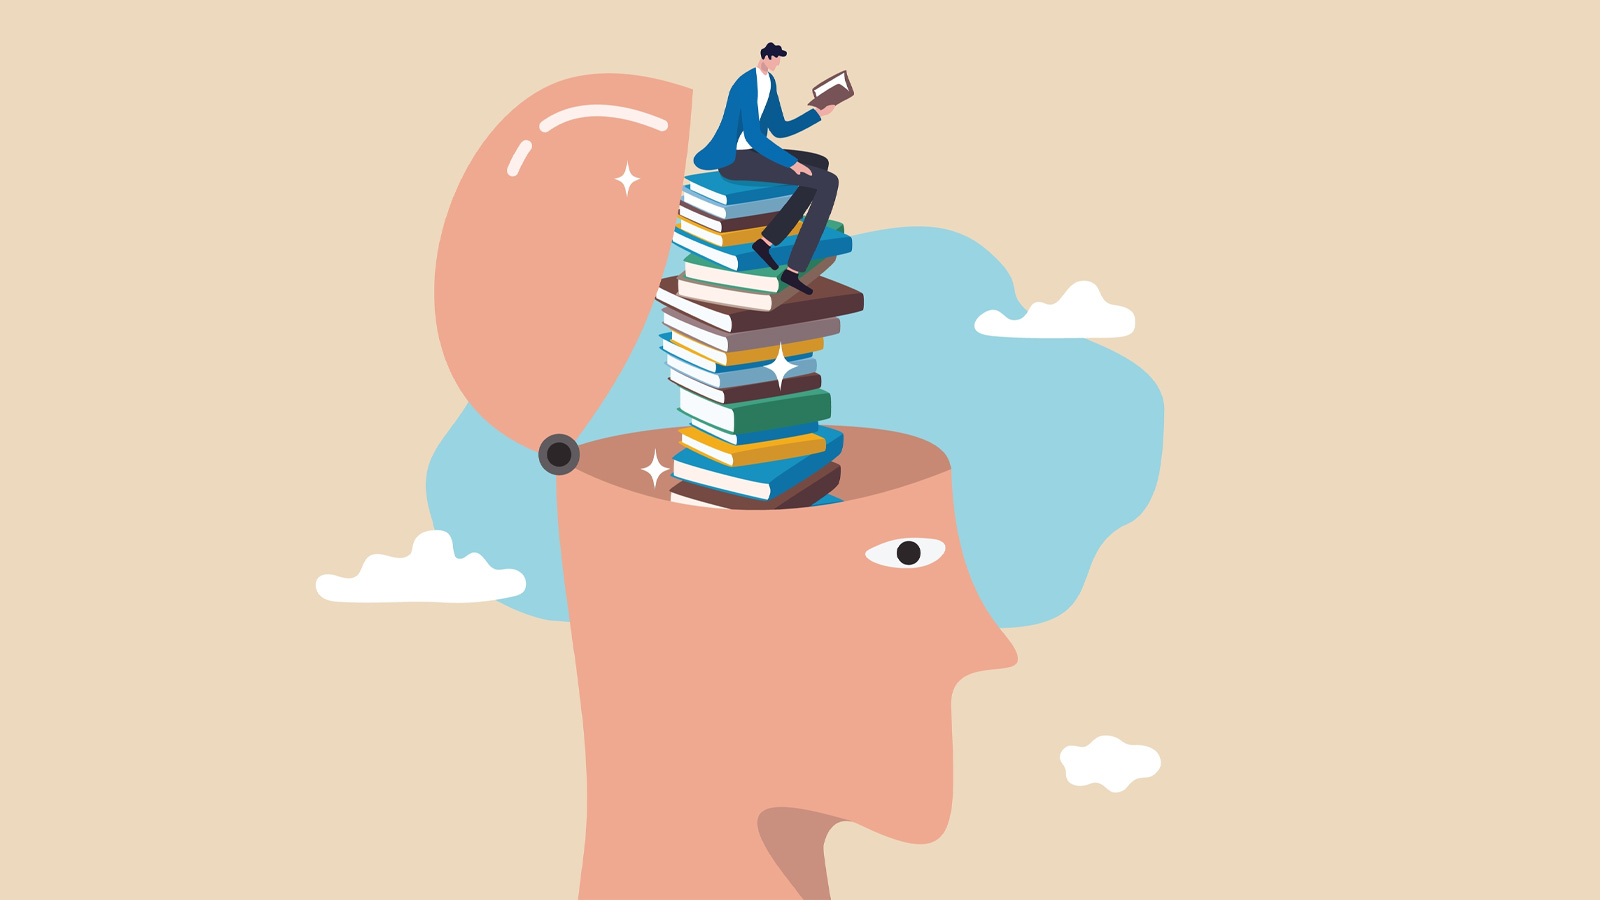 O dicionário mental: A biblioteca invisível e fascinante da mente humana